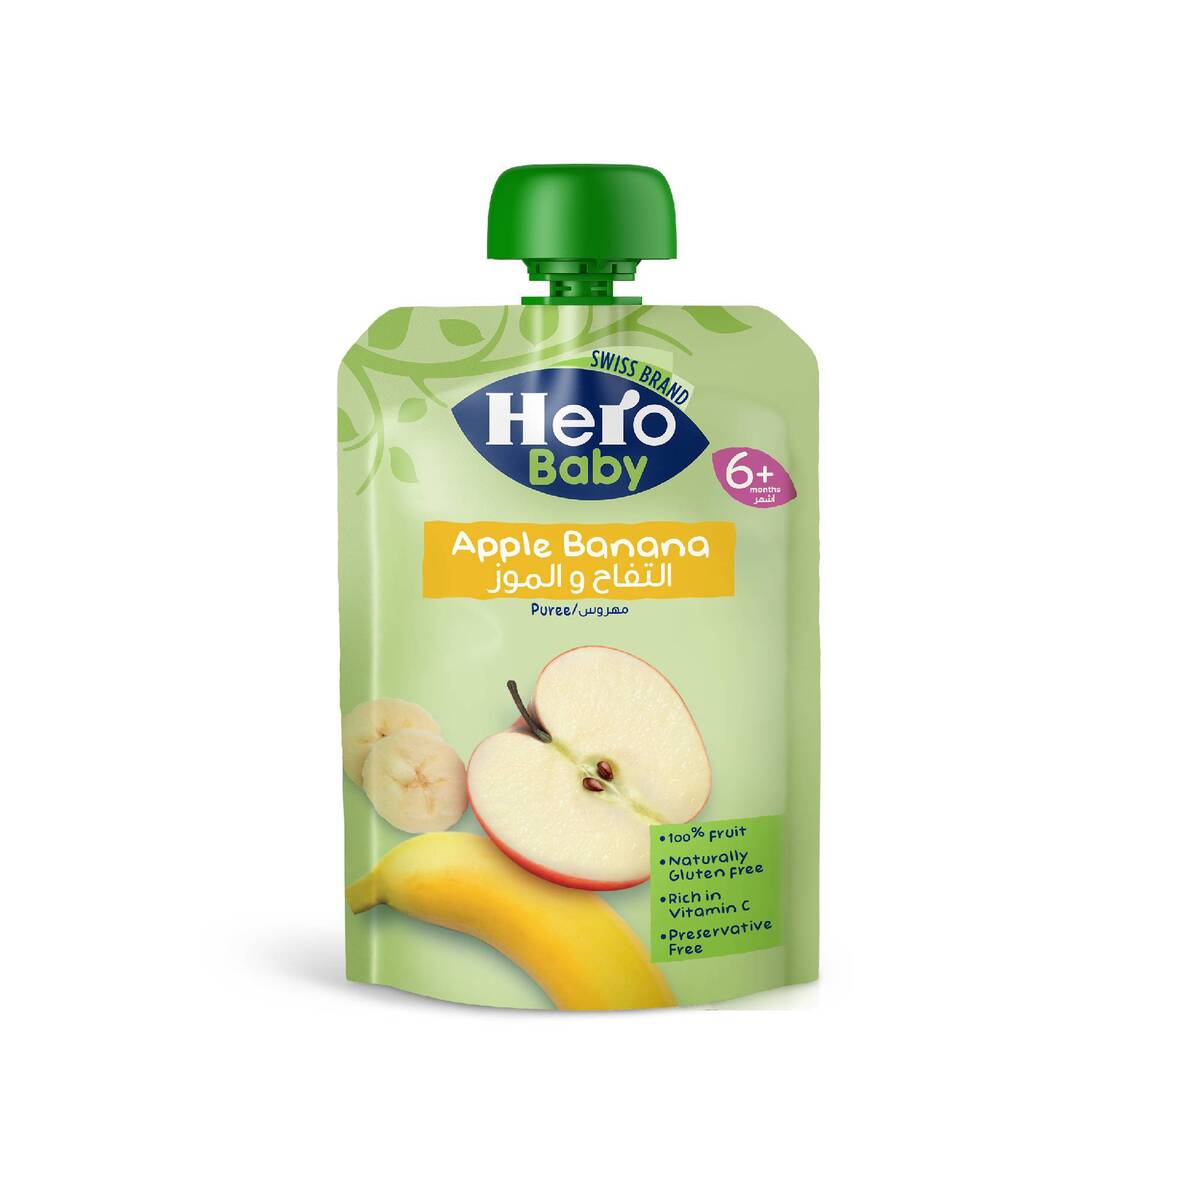 Hero Baby Apple Banana Puree 6+ Months 100 g